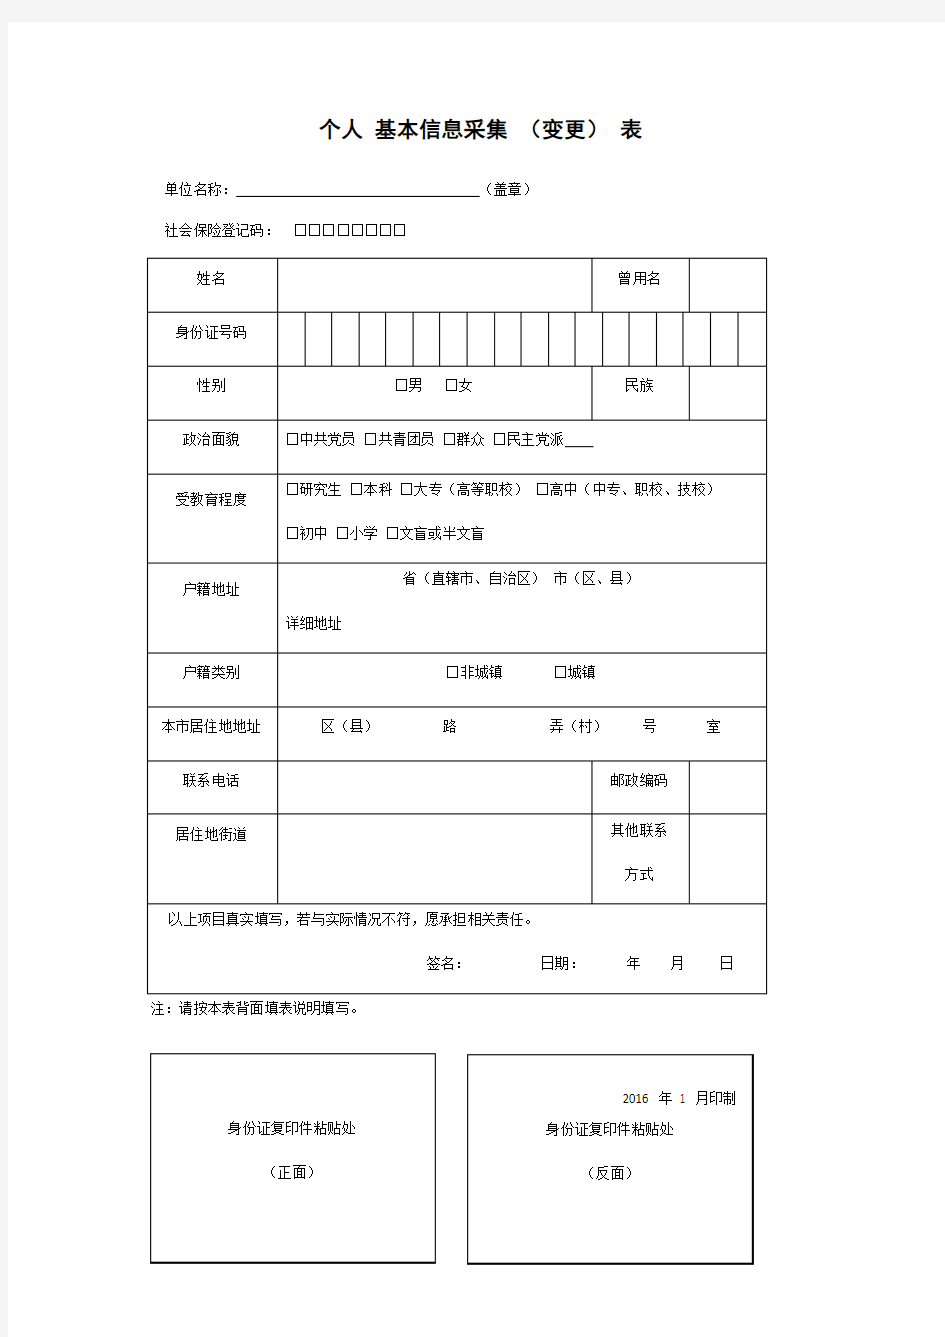 上海社保公积金个人信息采集表